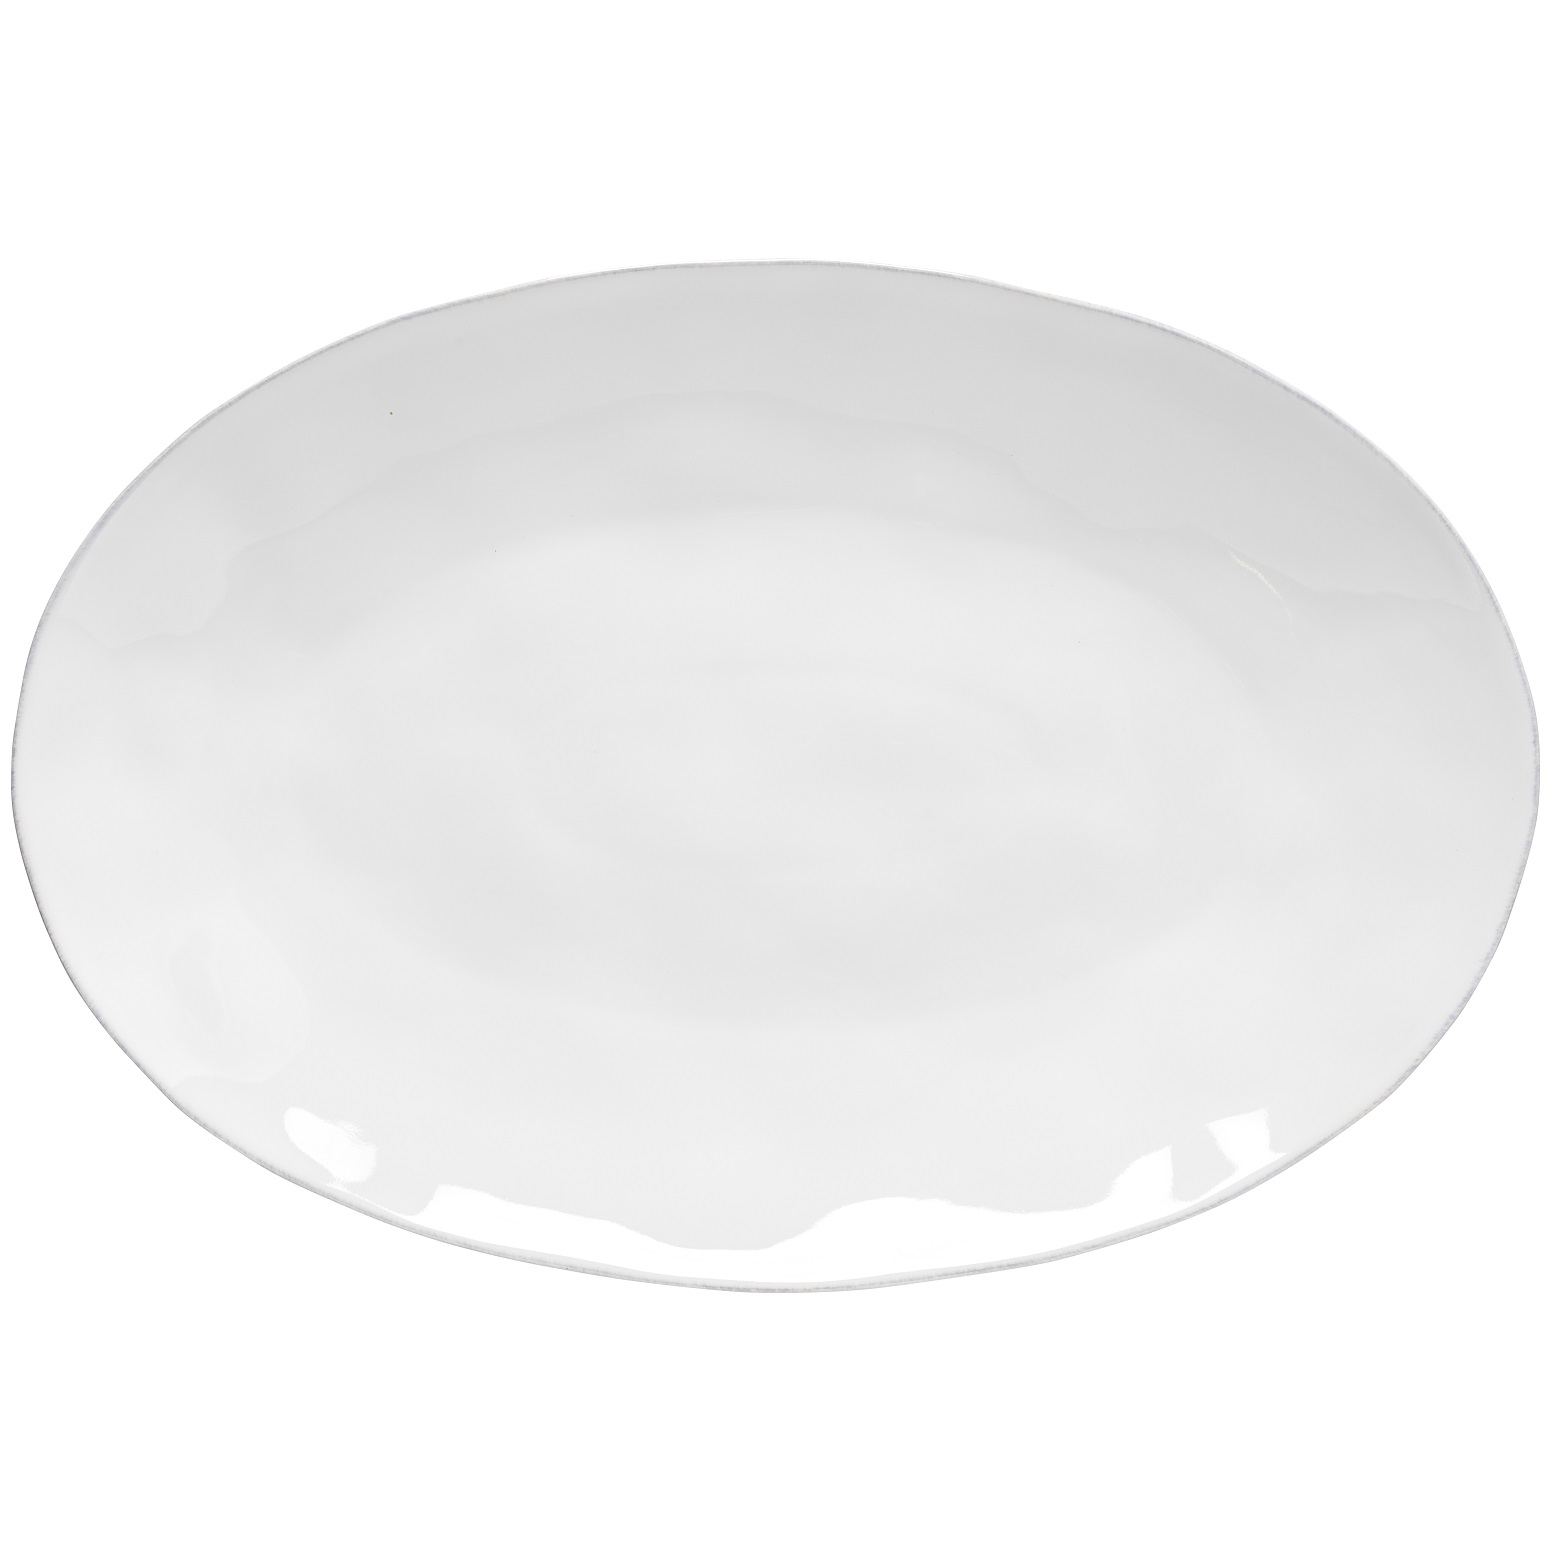 Livia White Oval Platter 45cm Gift